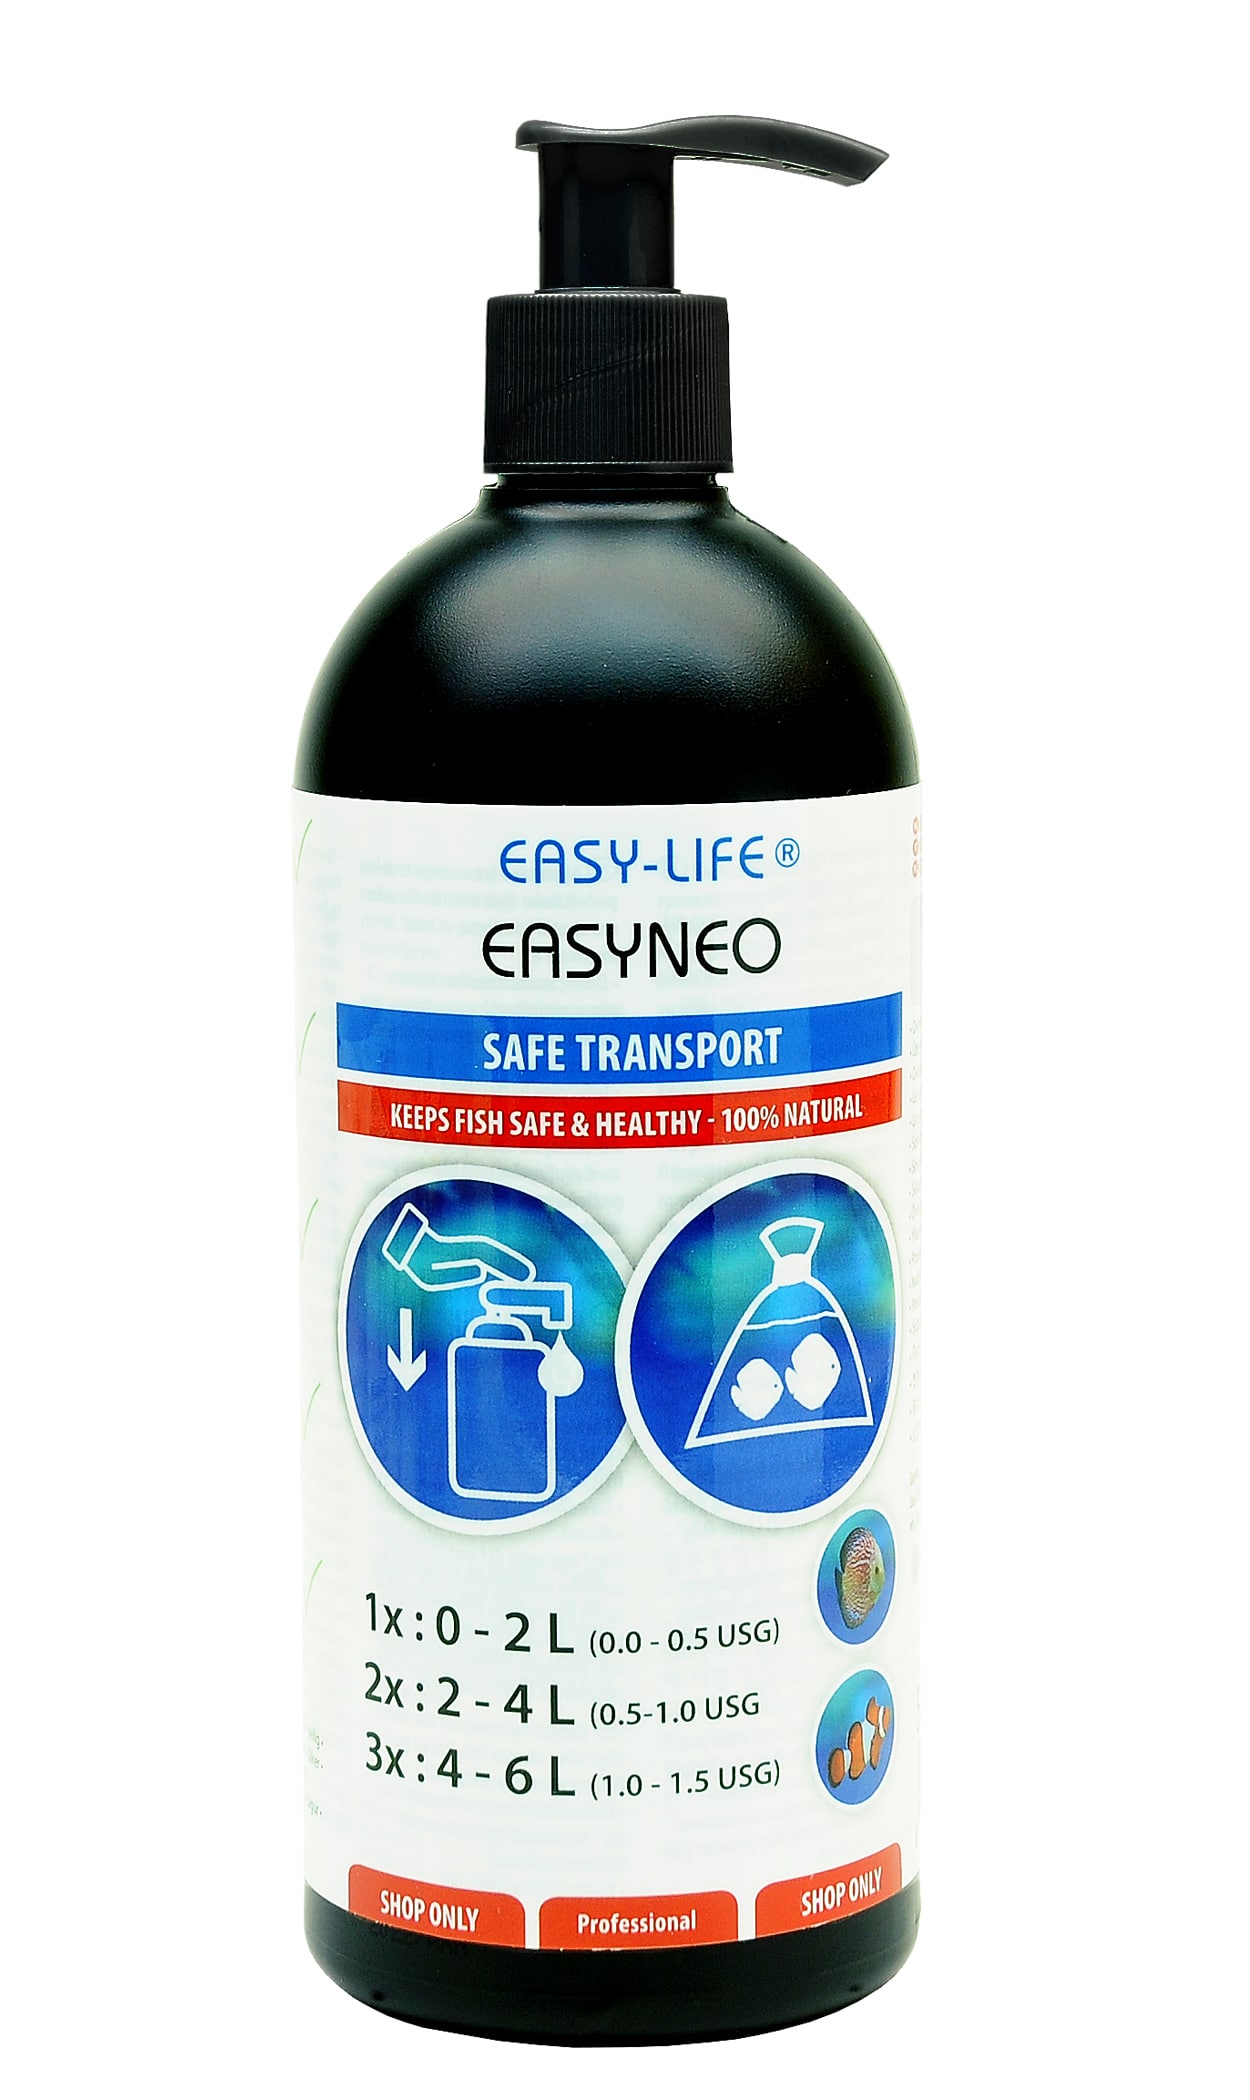 EASY-LIFE EasyNeo 500 ml produit anti-stress et de soin pour le transport des poissons